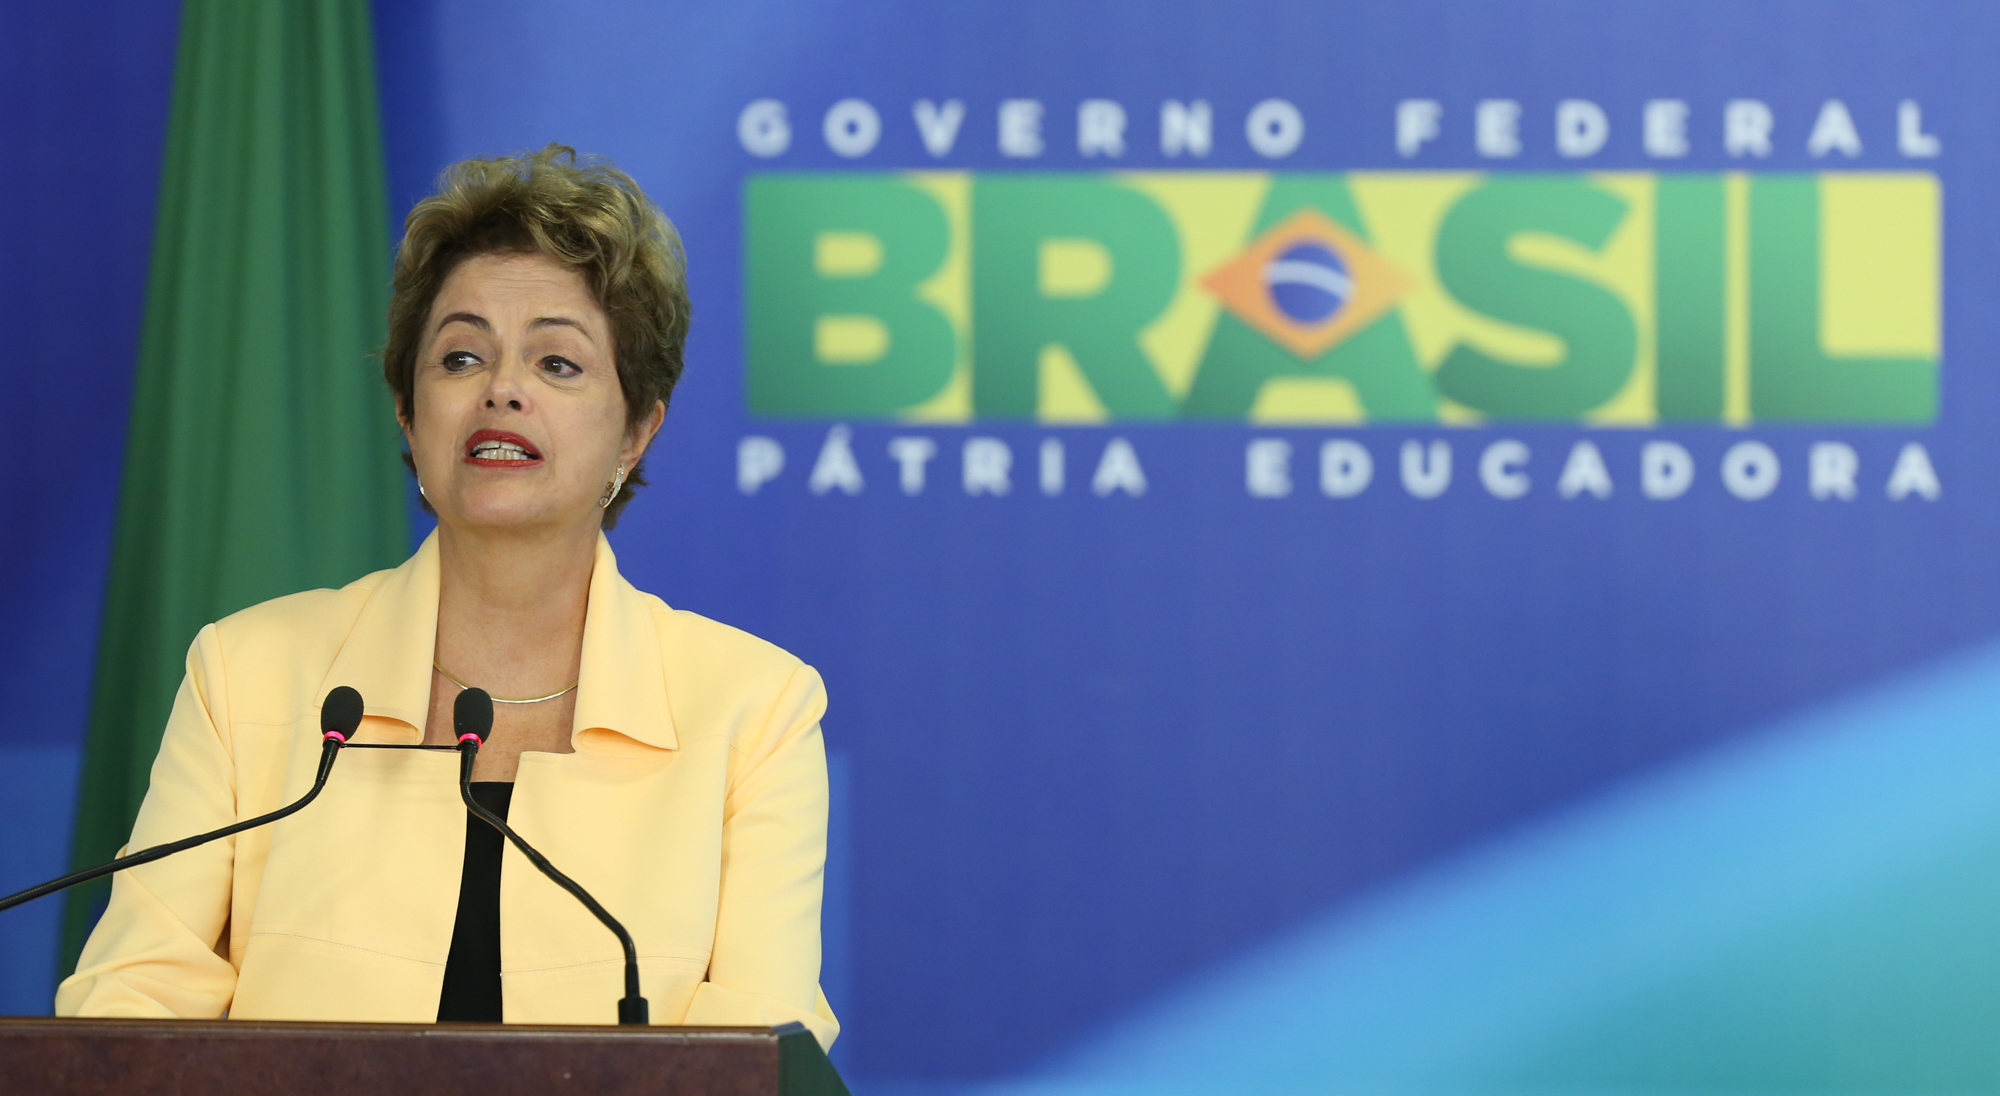 Recursos para programas sociais estão mantidos, garante Dilma